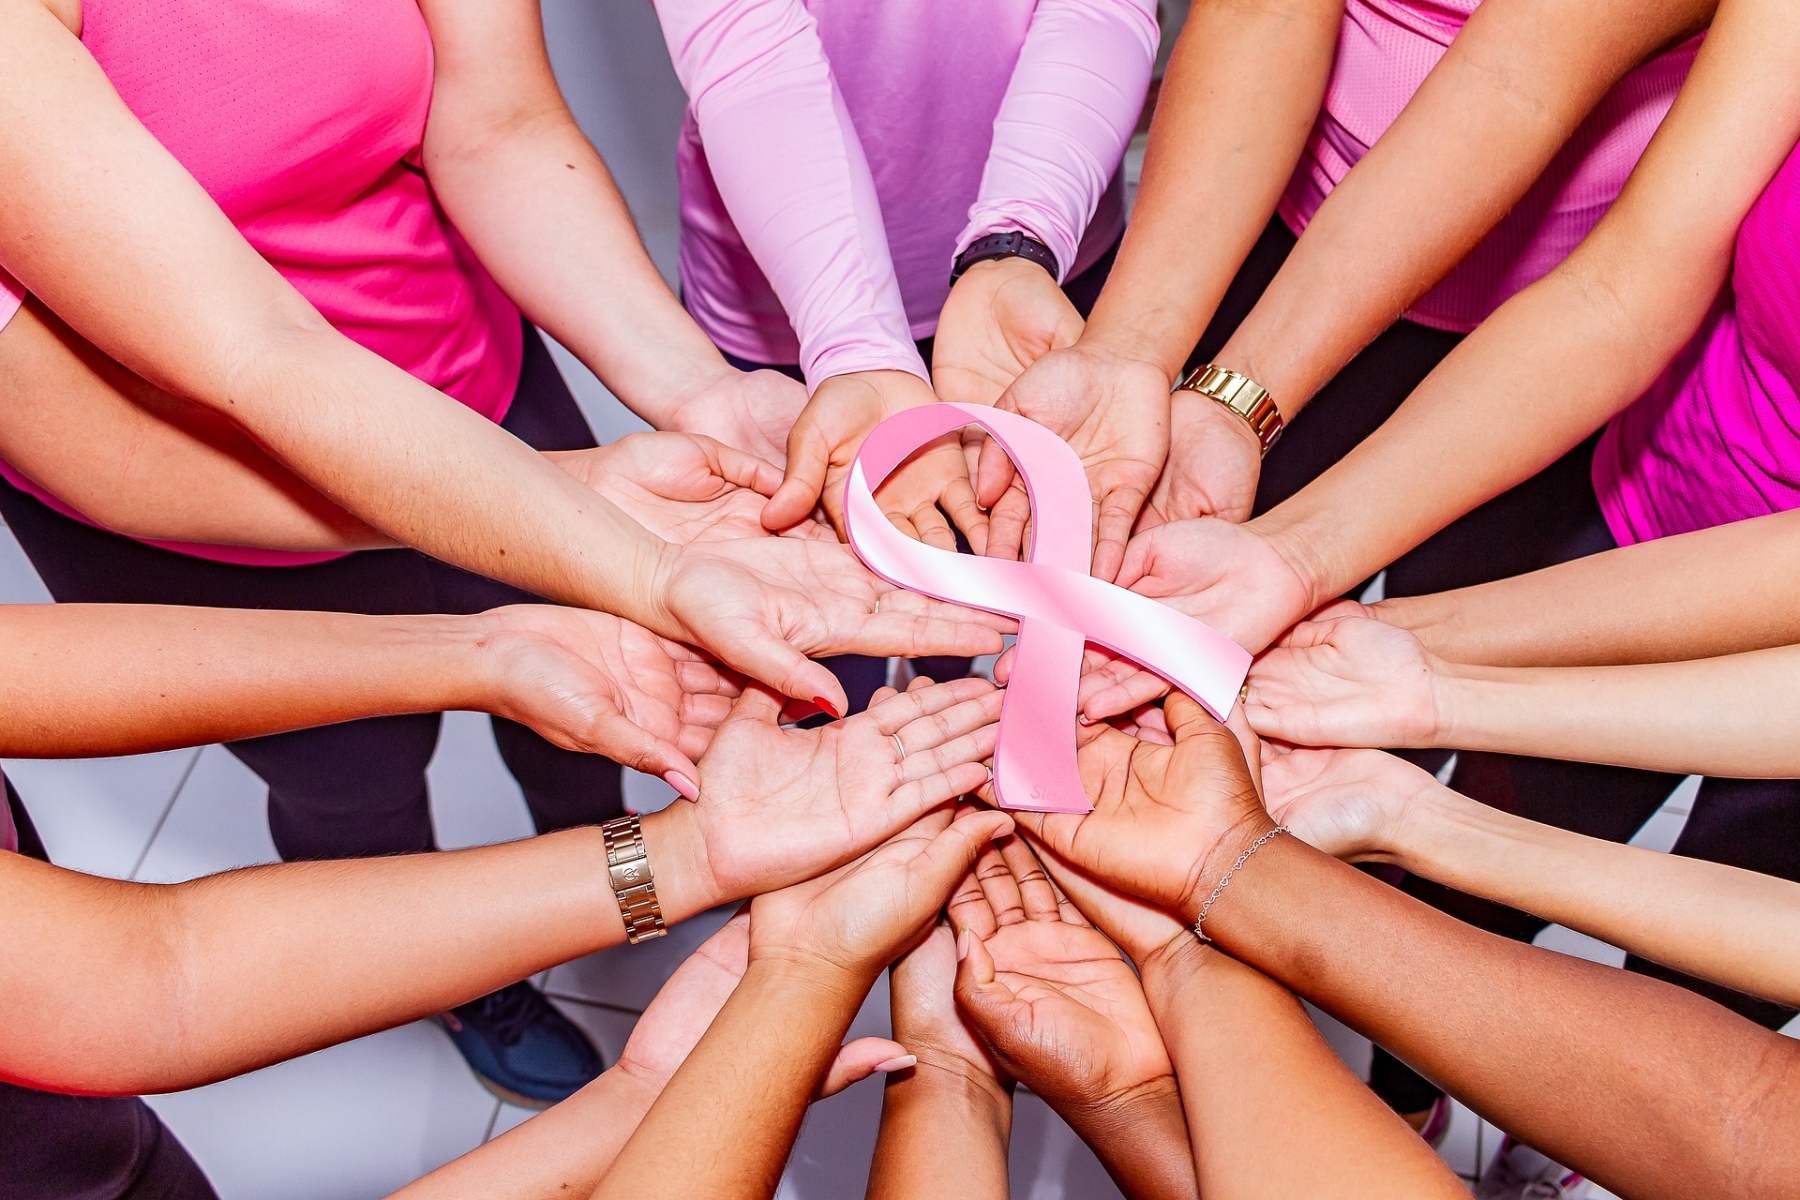 Καρκίνος μαστού: Απολογισμός 2ου Συνεδρίου από το Άλμα Ζωής [vid]